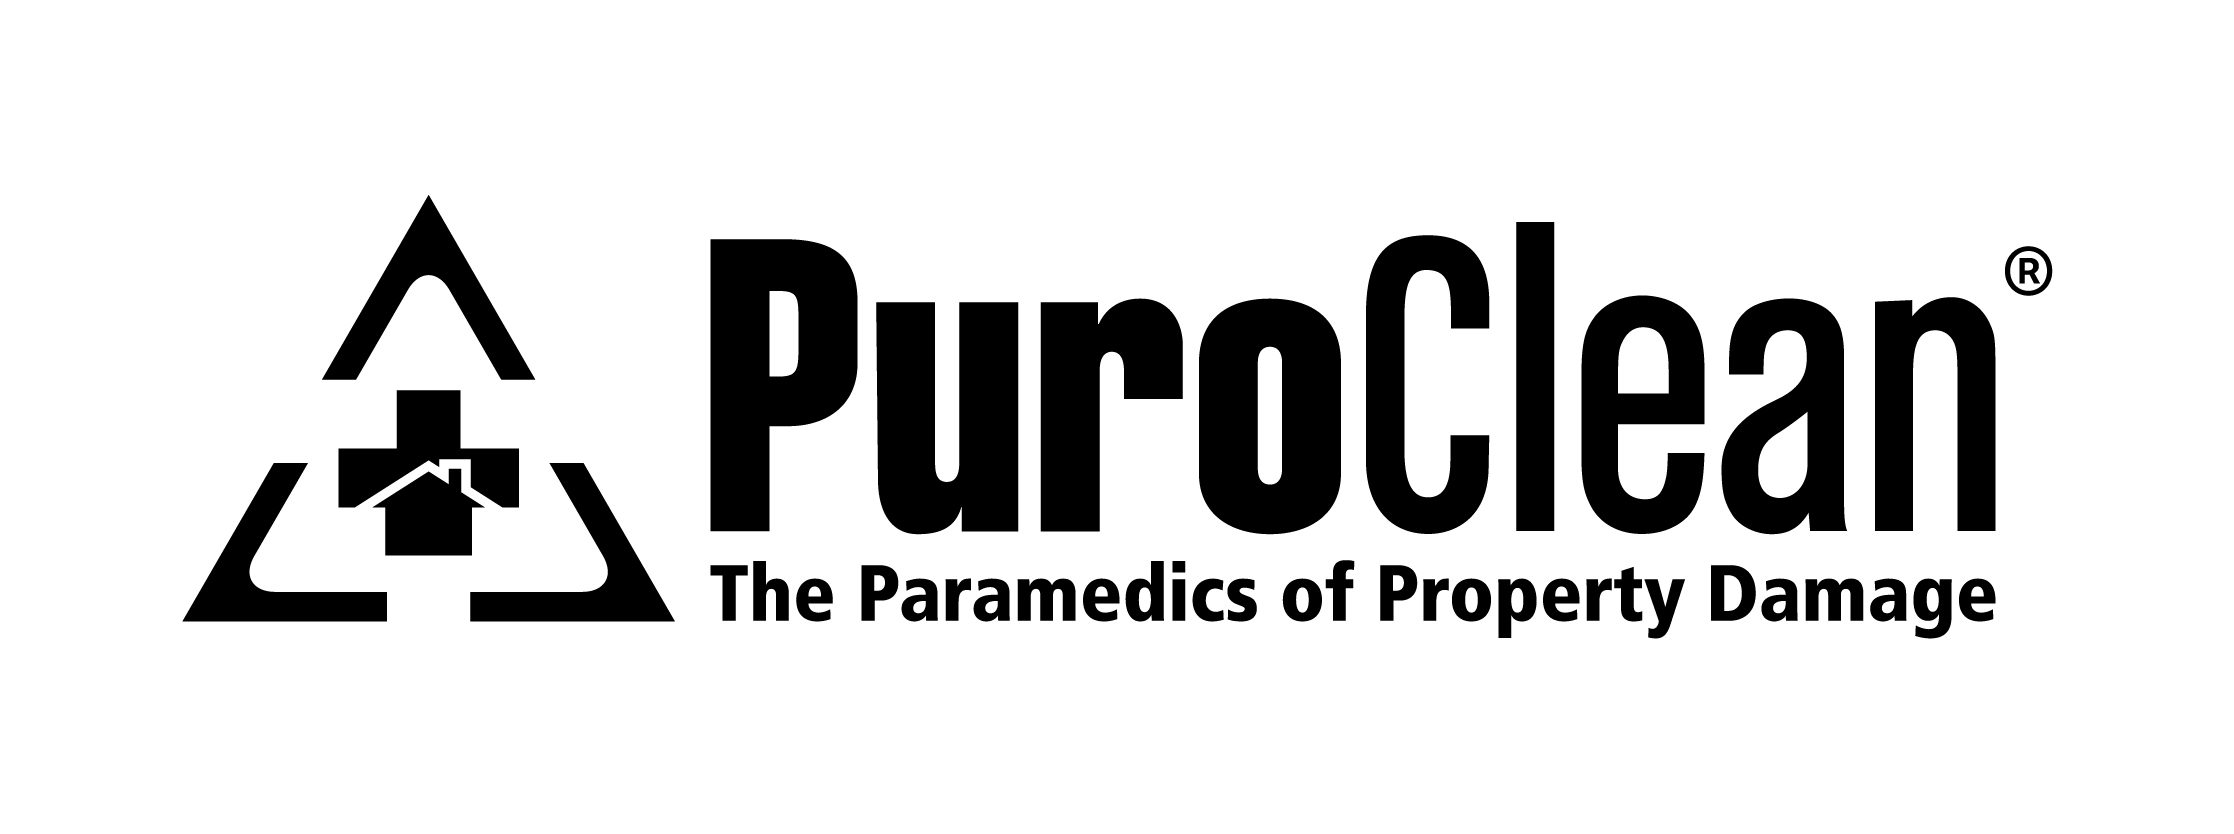 PuroClean Logo